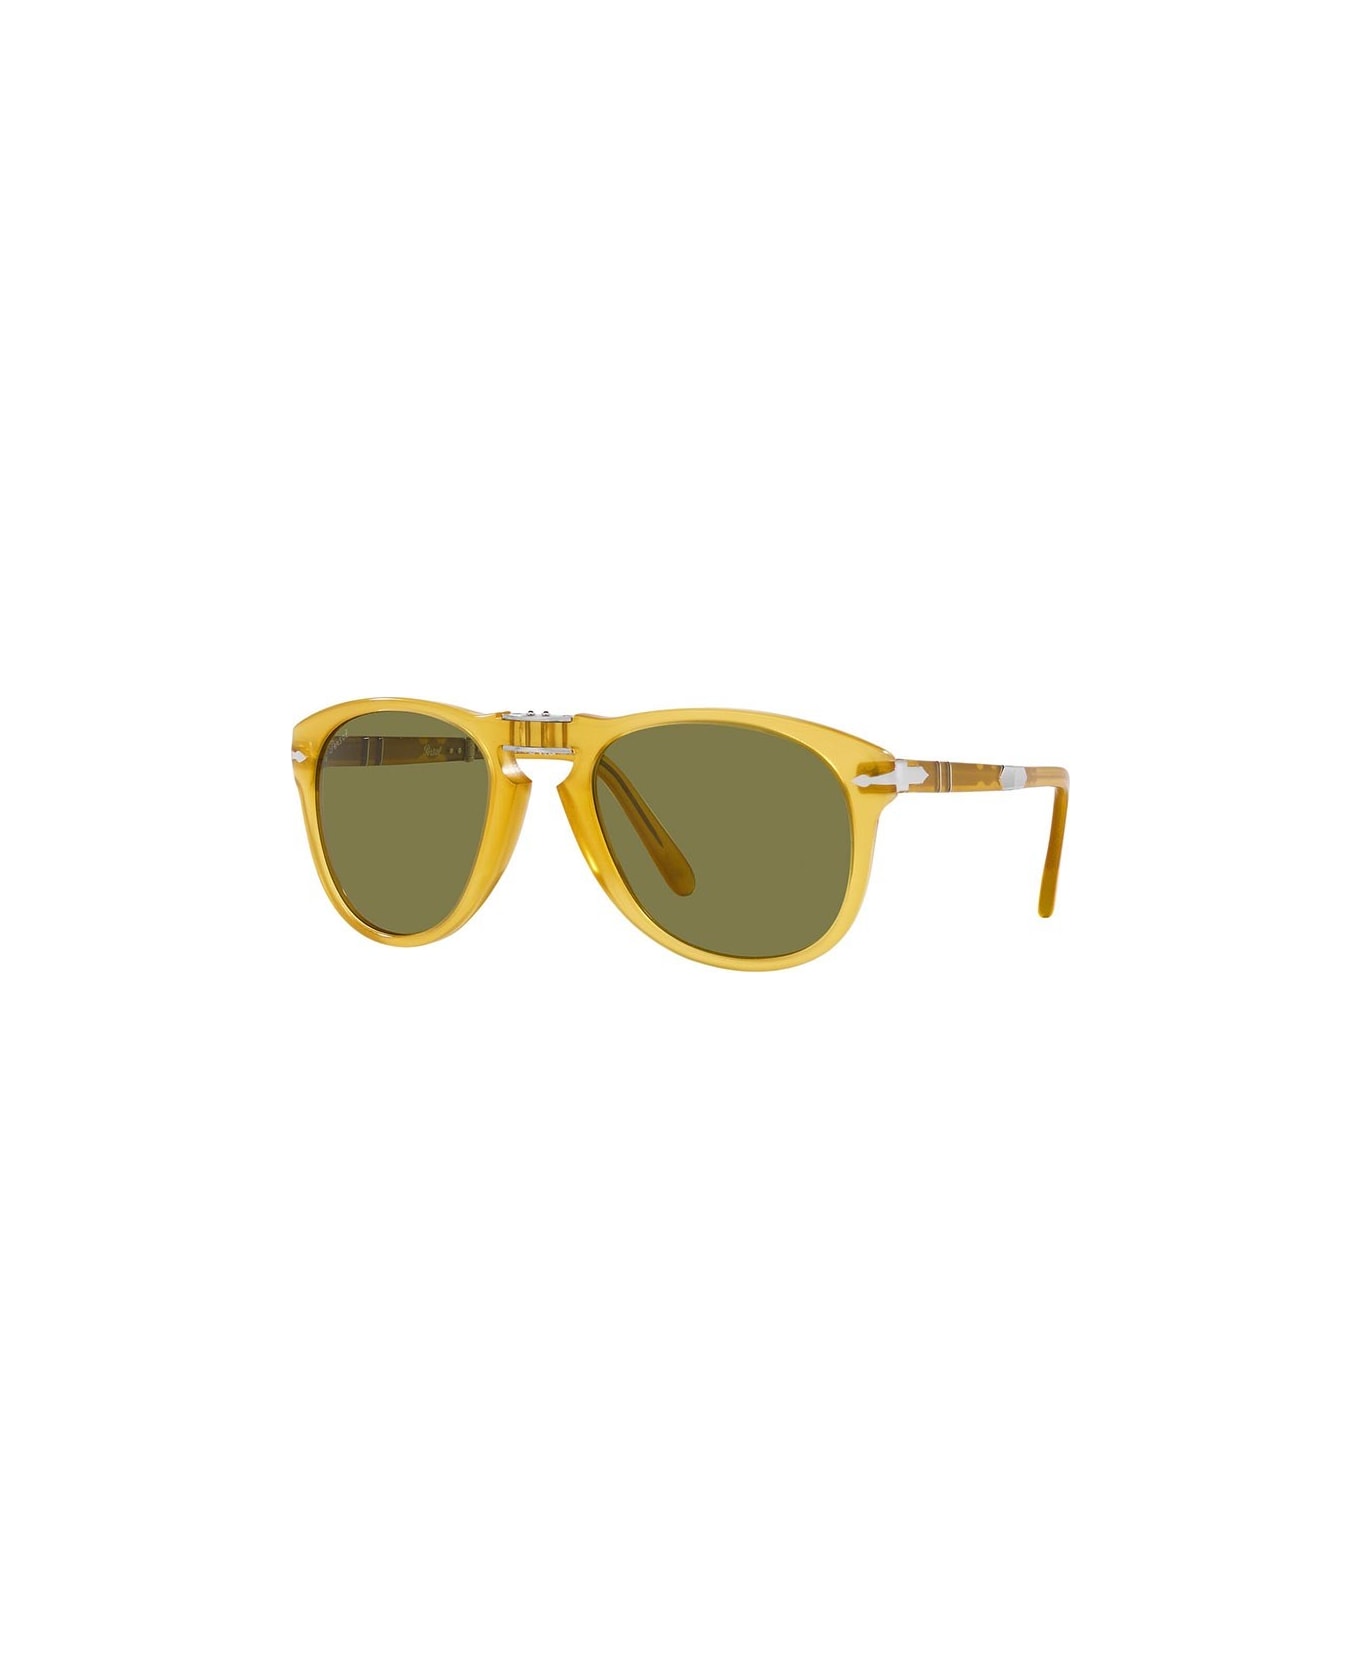 Persol Sunglasses - Giallo/Verde